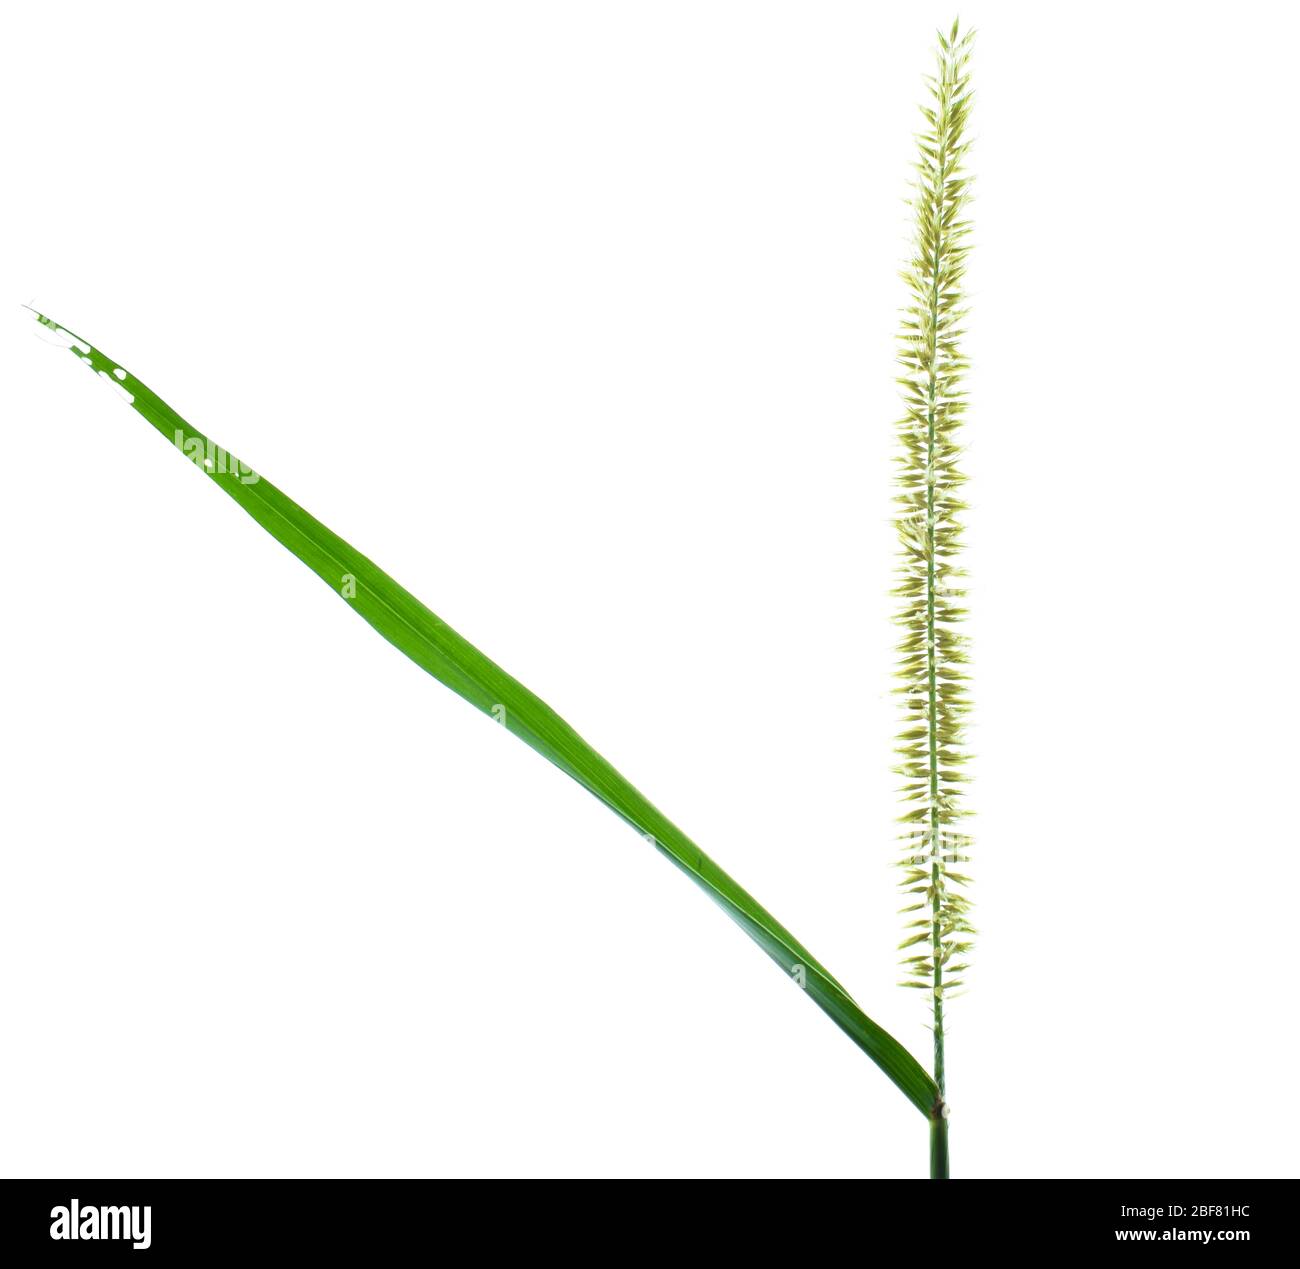 Ein einzelner hellgrüner Reisbaum, der vor einem leeren weißen isolierten Hintergrund platziert ist Stockfoto